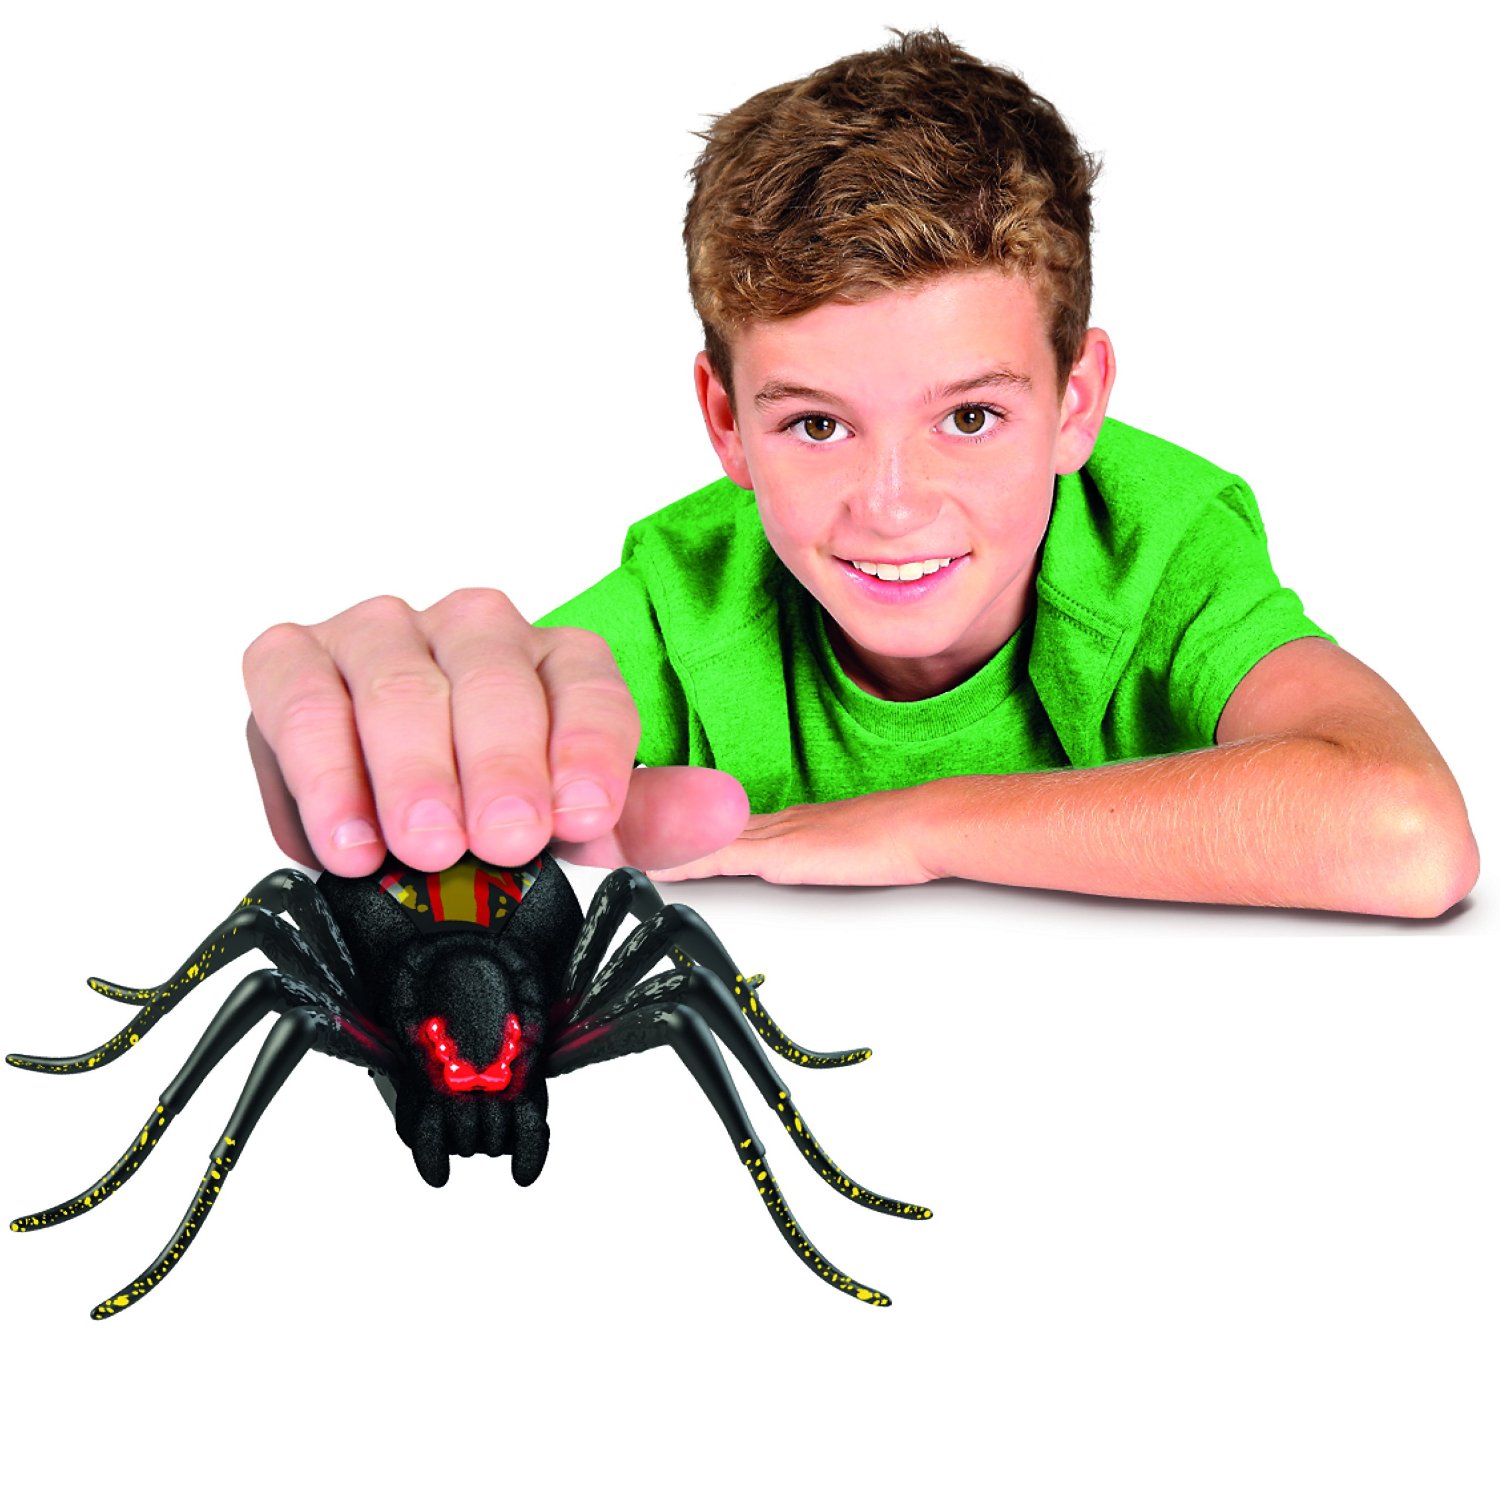 Good wild pets. Wild Pets паук. Интерактивная игрушка "паук". Игрушки пауки петс. Логово паука игрушка.